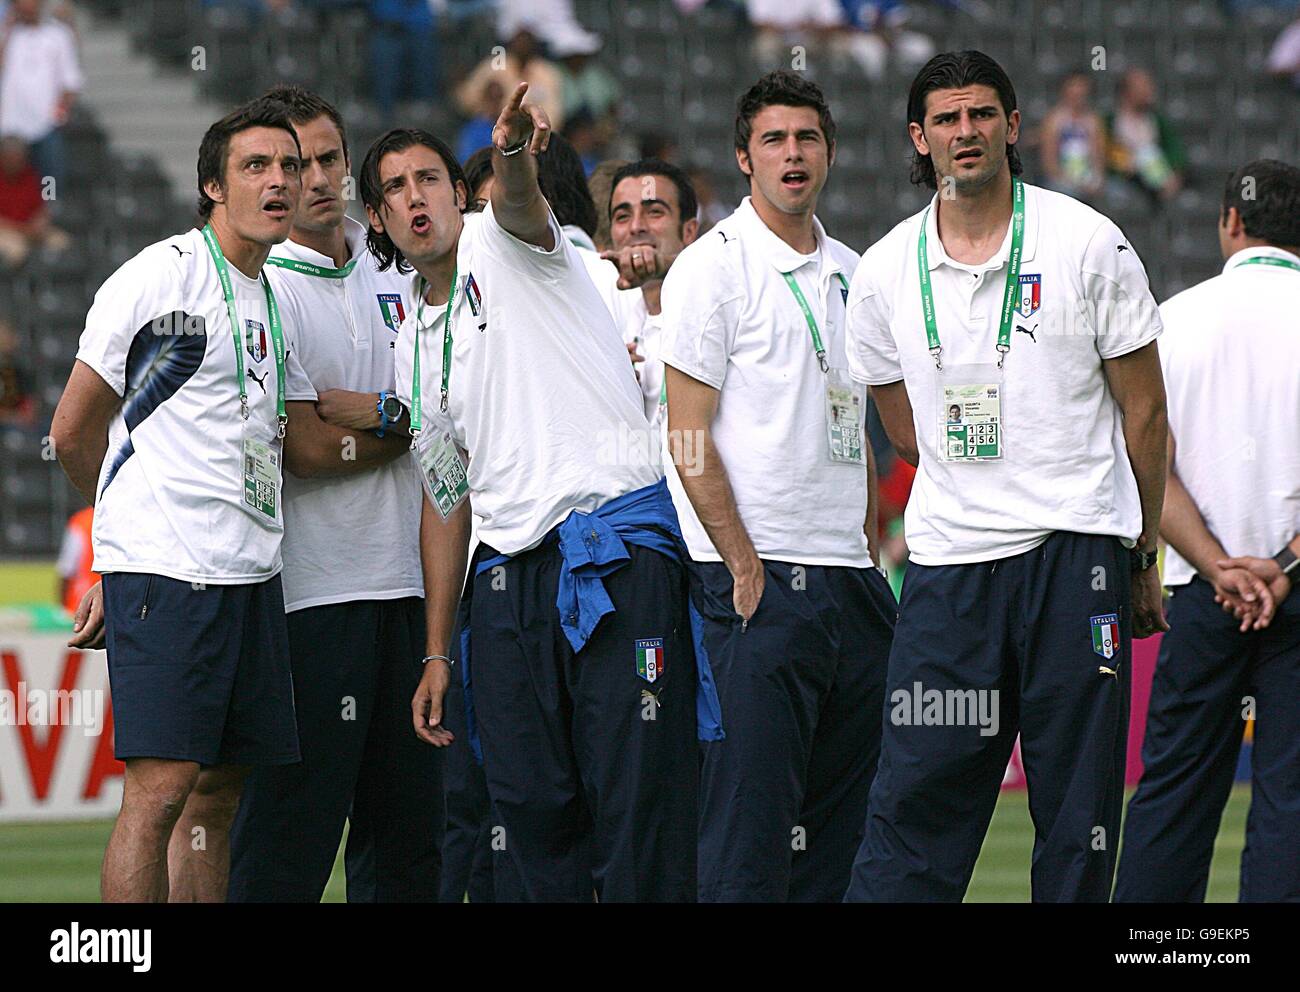 Calcio - Coppa del mondo FIFA 2006 Germania - finale - Italia / Francia - Olympiastadion - Berlino. La squadra italiana si porta in campo prima della partita. Foto Stock